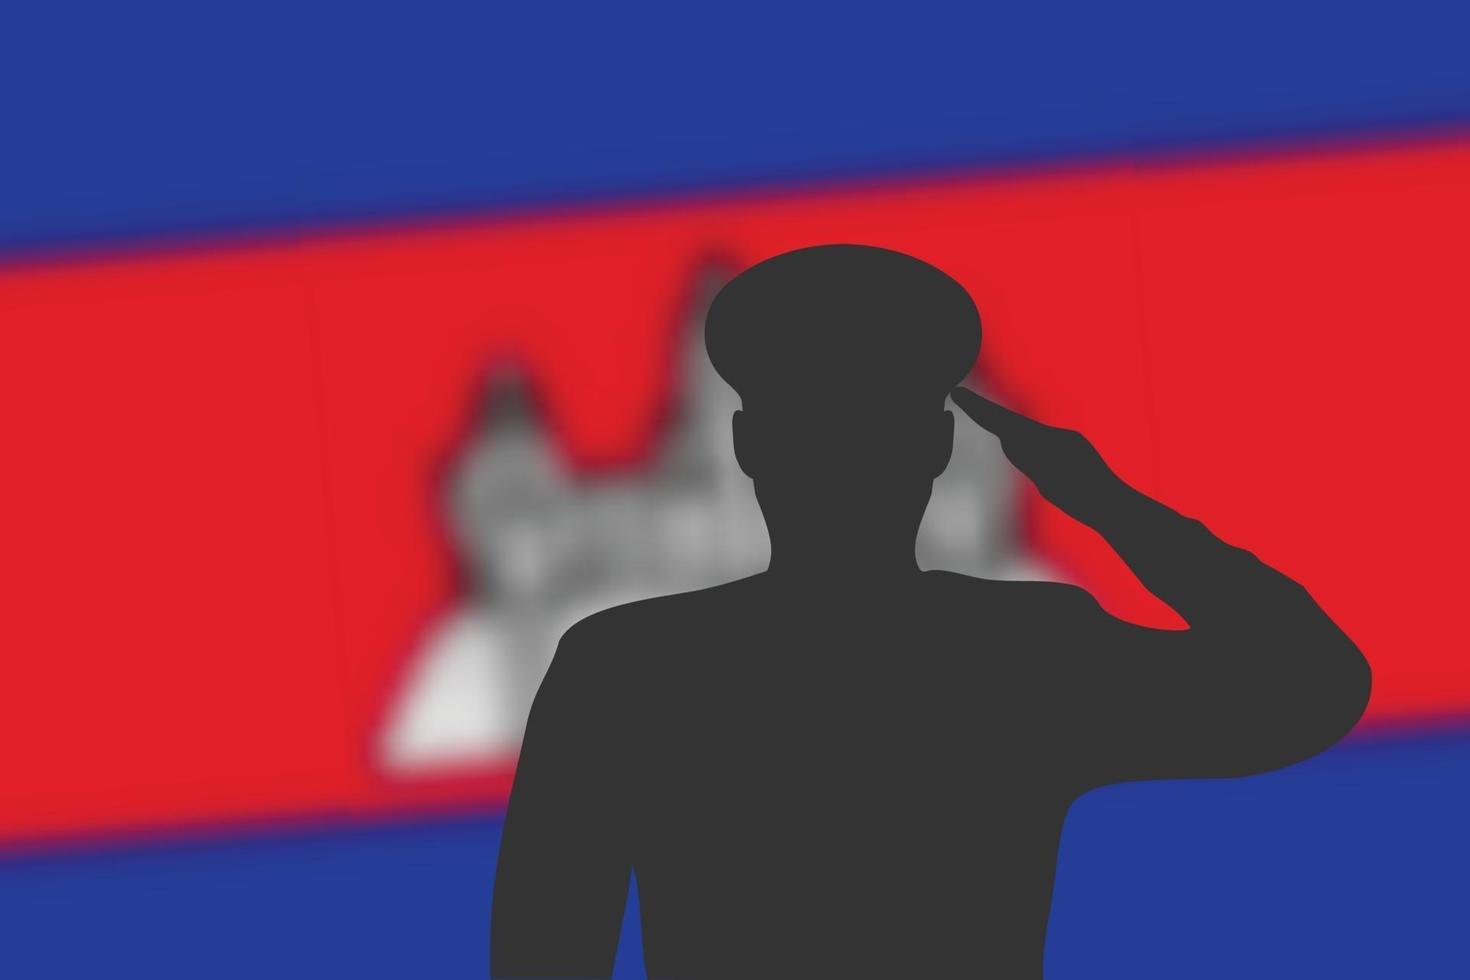 Lötsilhouette auf Unschärfehintergrund mit Kambodscha-Flagge. vektor